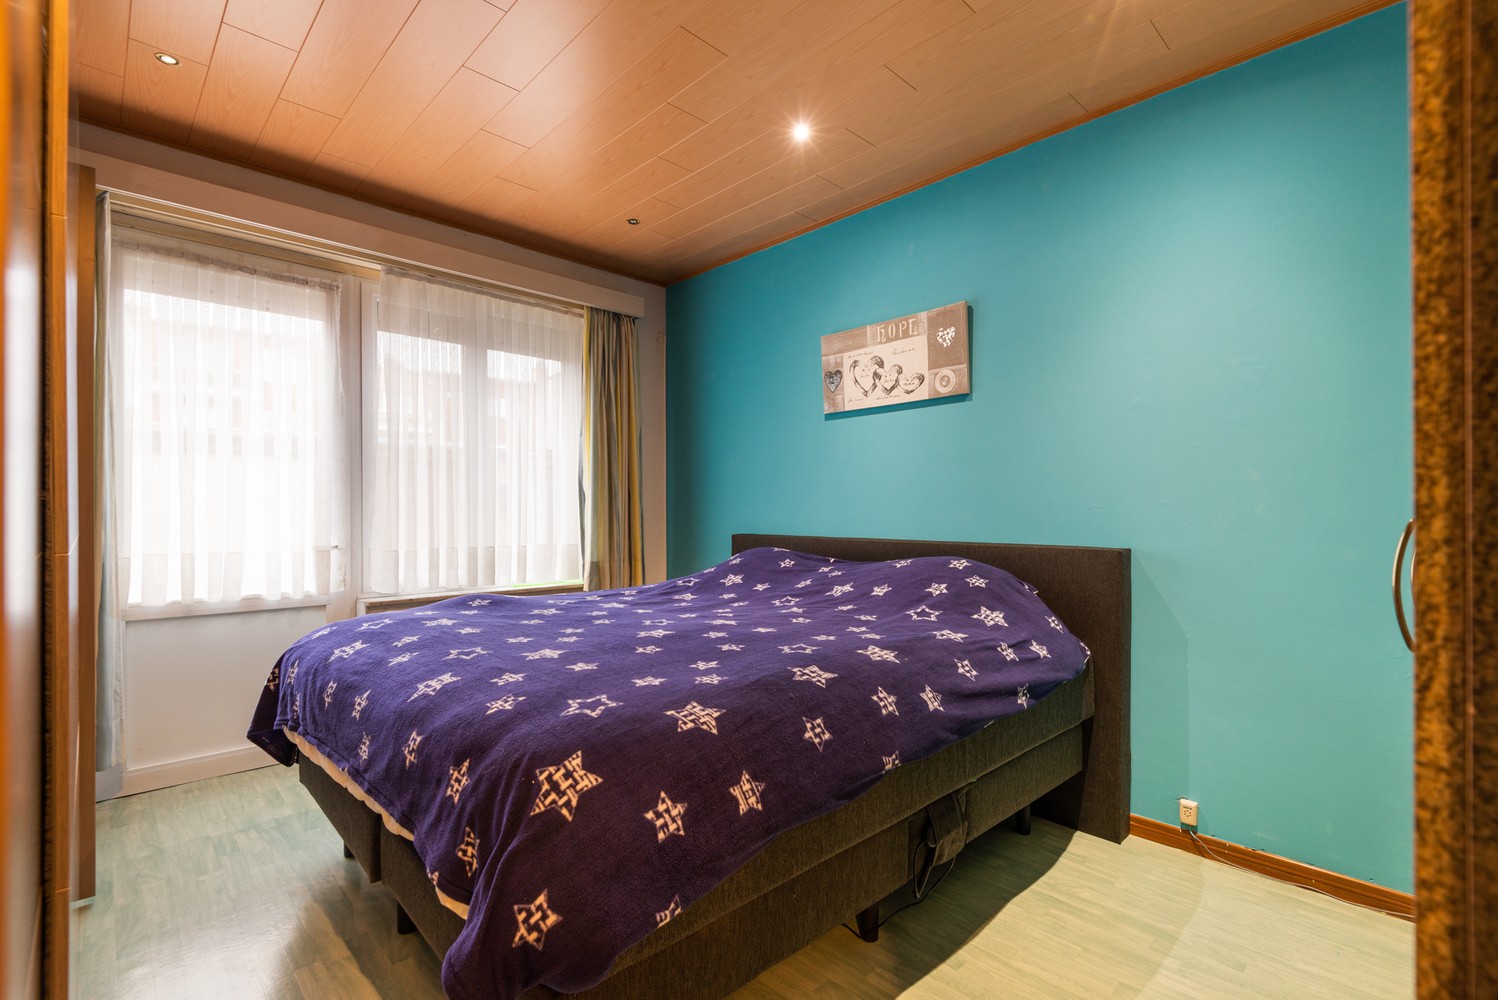 Gelijkvloers appartement met 2 slaapkamers, inclusief garage in Borsbeek! afbeelding 10